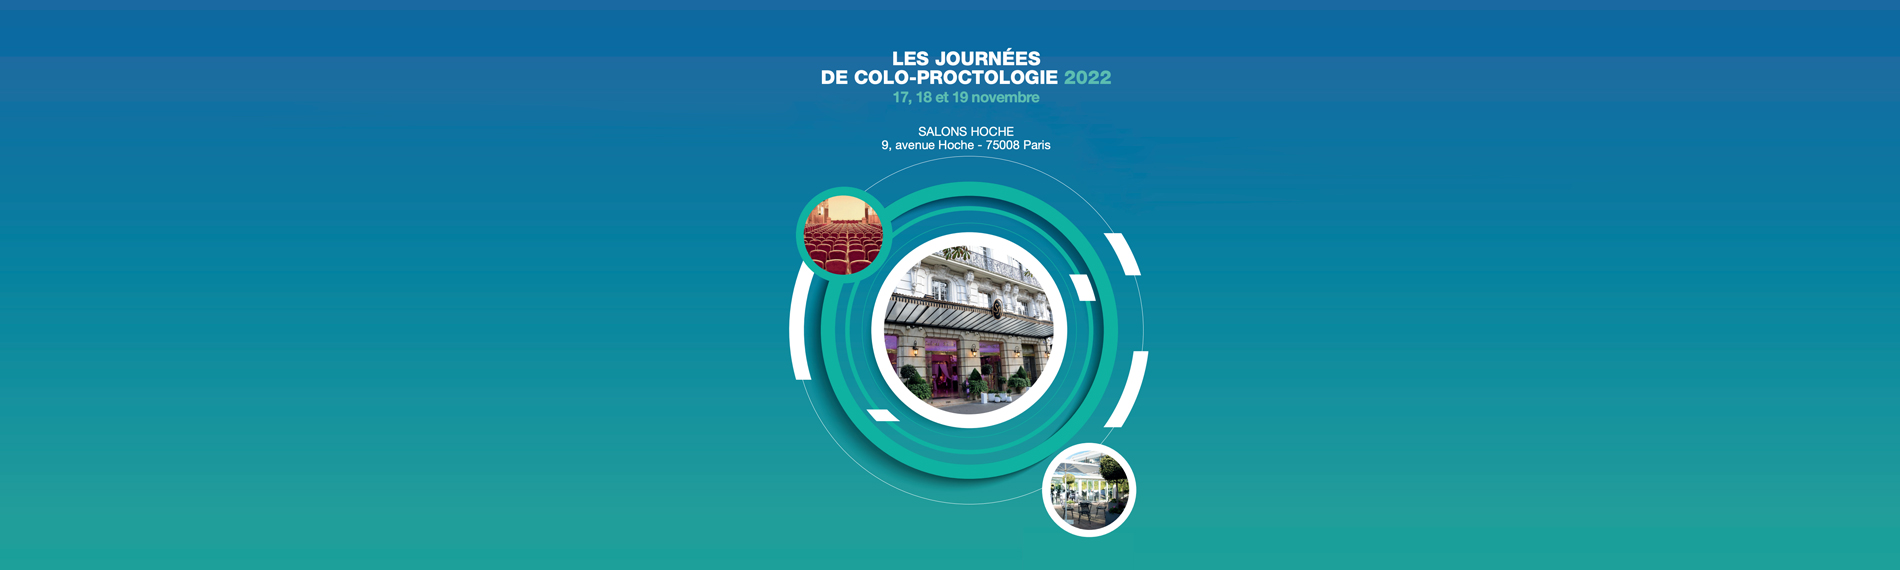 Les Journeés de Colo-Proctologie, 17-19 November 2022